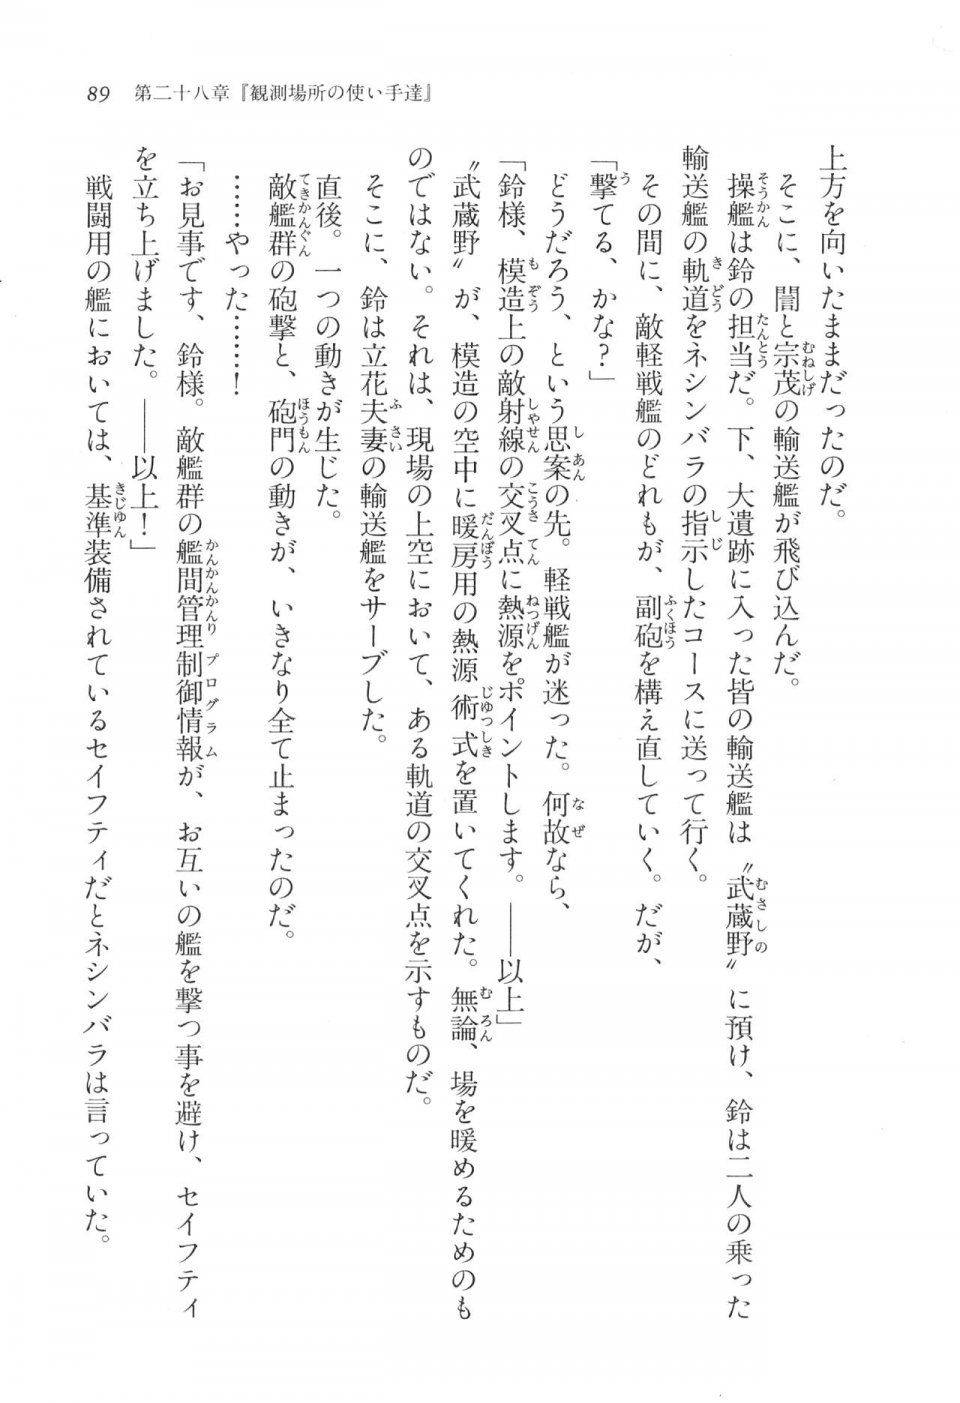 Kyoukai Senjou no Horizon LN Vol 17(7B) - Photo #89